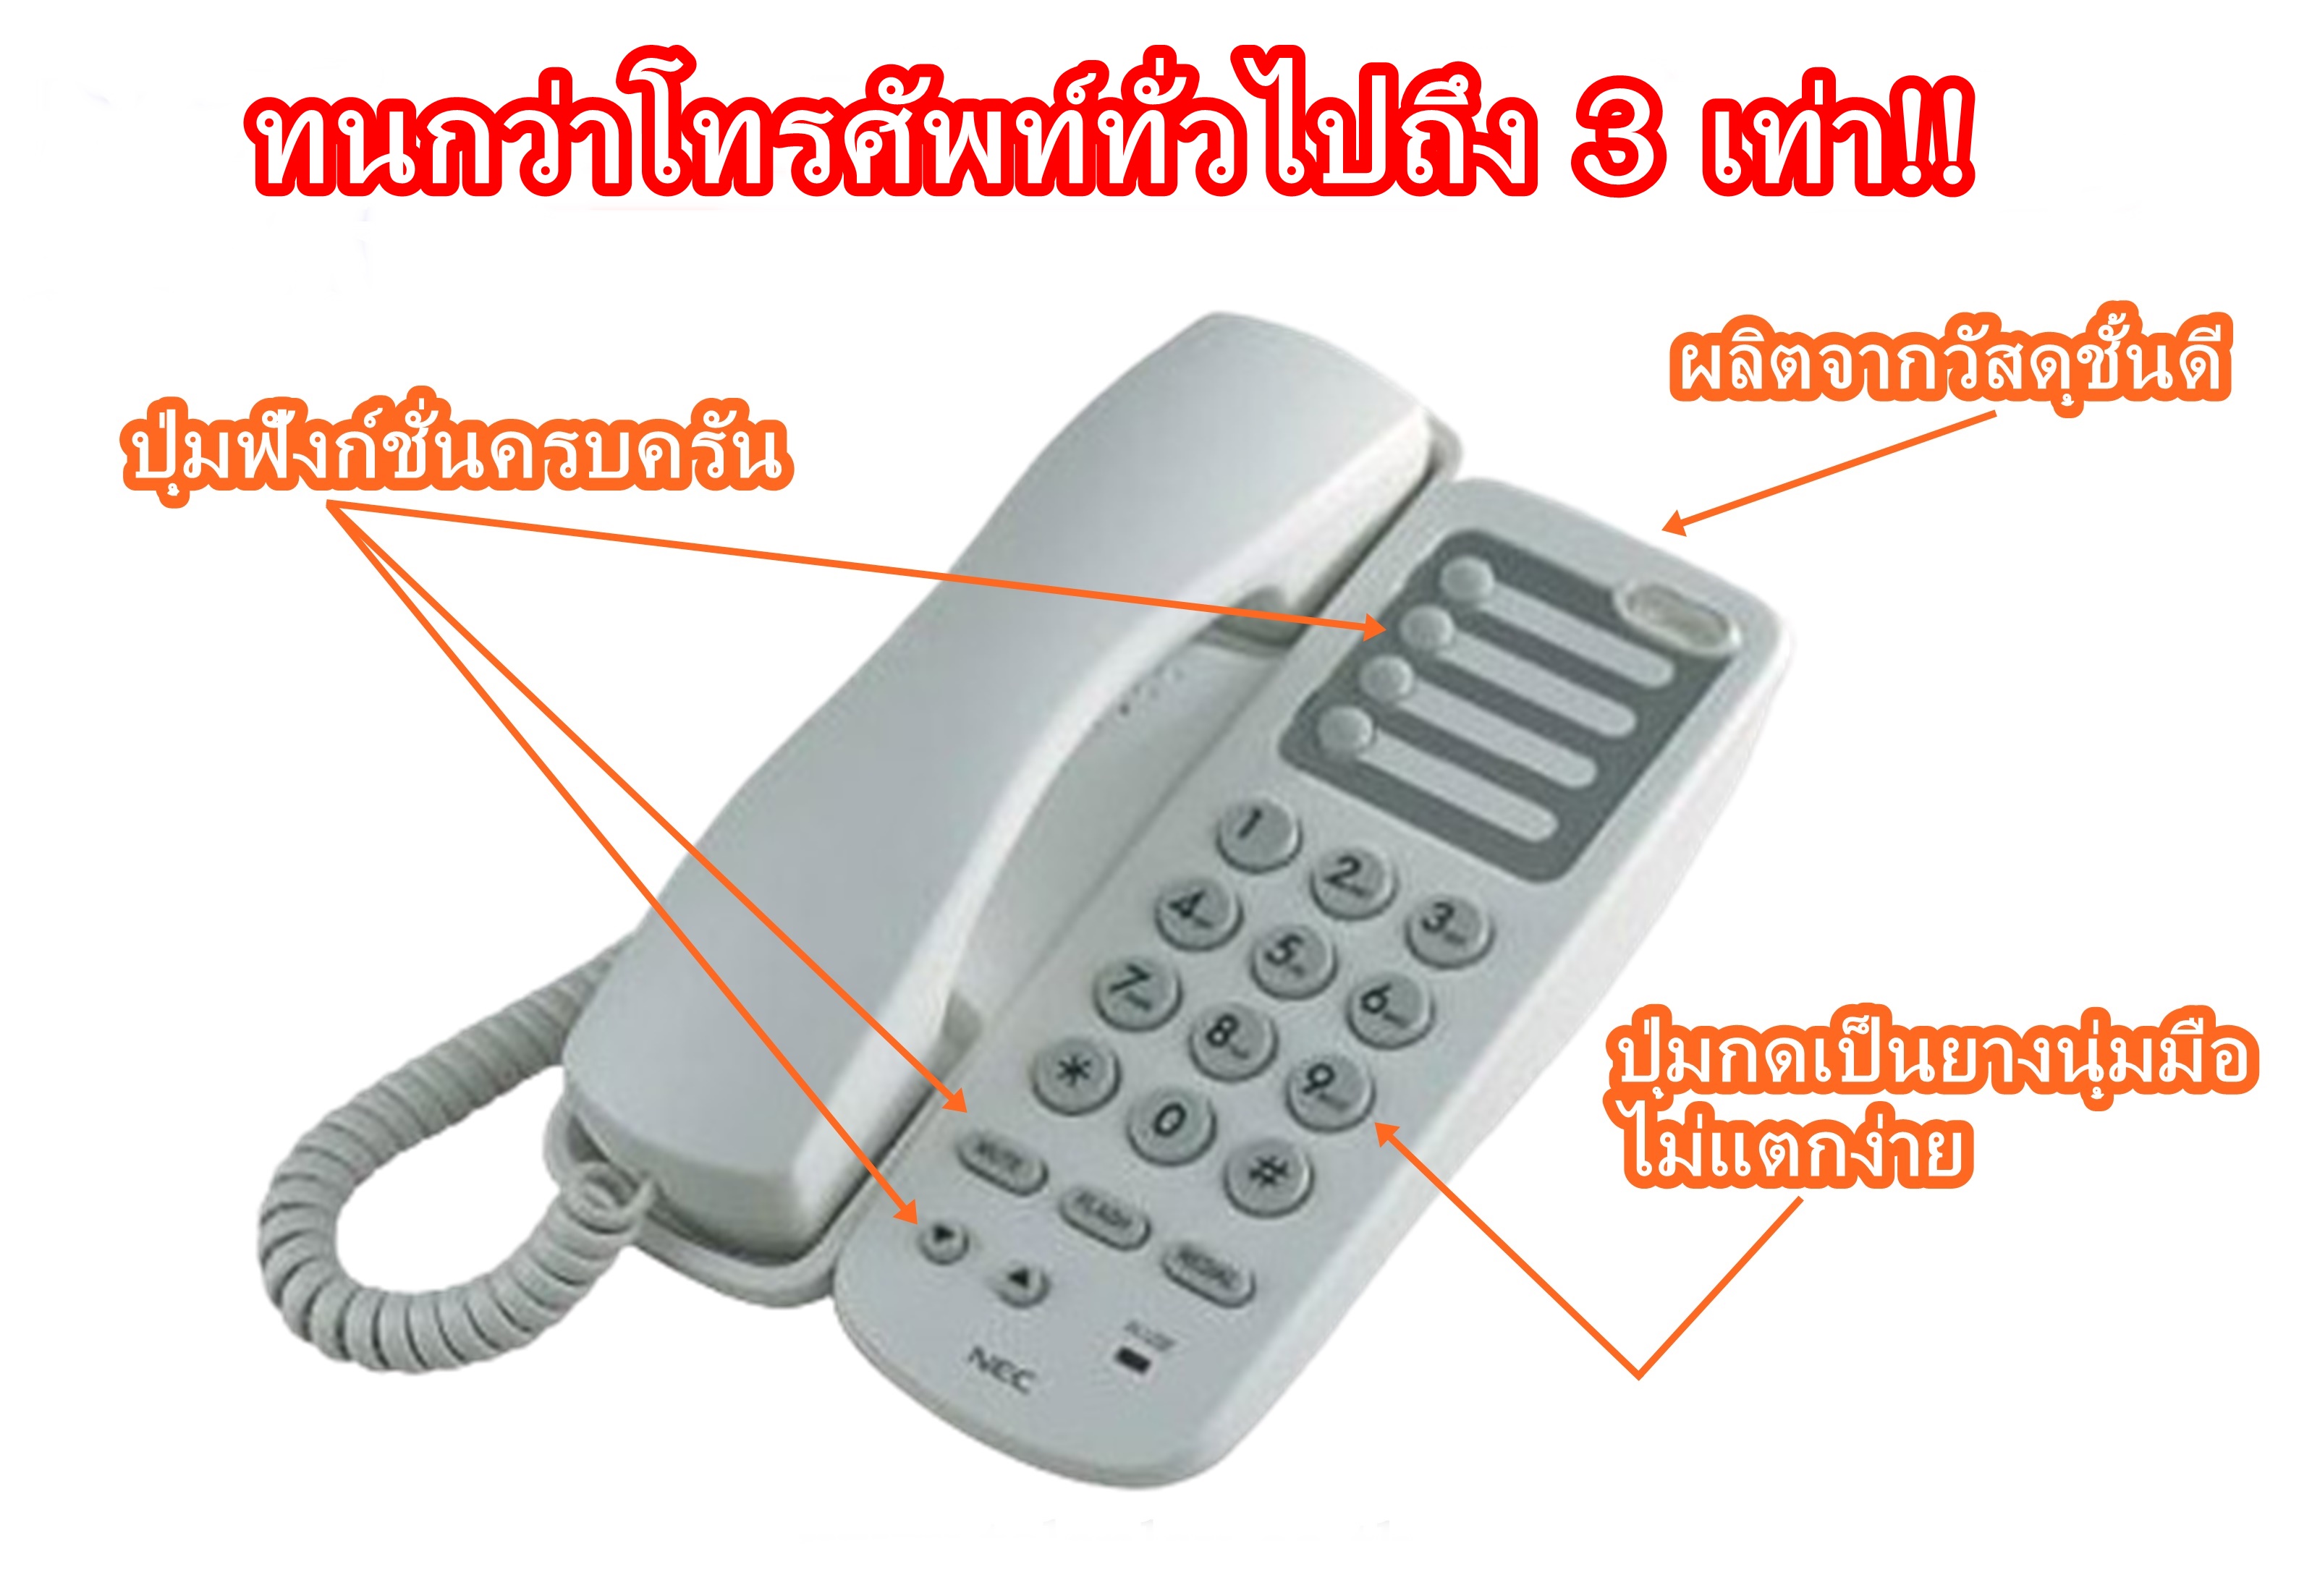 เครื่องโทรศัพท์ ระบบโทรศัพท์ Nec At-45 (สีดำ) โทรศัพท์บ้าน โทรศัพท์ออฟฟิศ  โทรศัพท์โรงแรม โทรศัพท์ภายใน ระบบสื่อสาร ระบบโทรศัพท์ภายในองค์กร ระบบ โทรศัพท์ภายในโรงแรม ติดตั้ง Ip Pabx Telephone Ip Phone Pbx ตู้สาขา เอ็นอีซี  Single Line 5 เครื่อง - Tlp ...